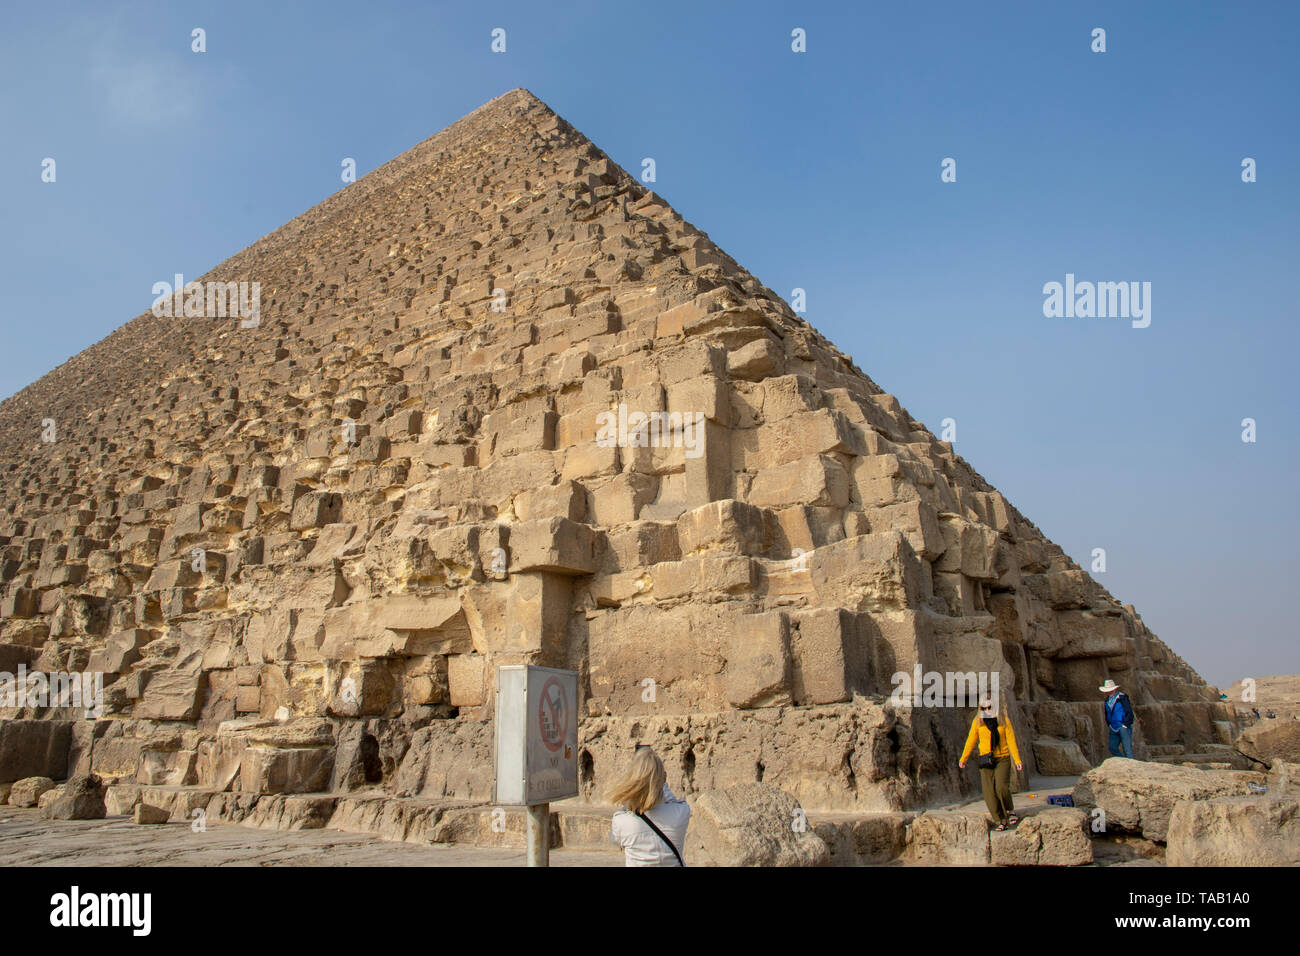 La Pirámide de Khufu es la más antigua y la más grande de las tres grandes pirámides de Giza, y fue construido hace más de 4.000 años, durante la IV Dinastía Foto de stock